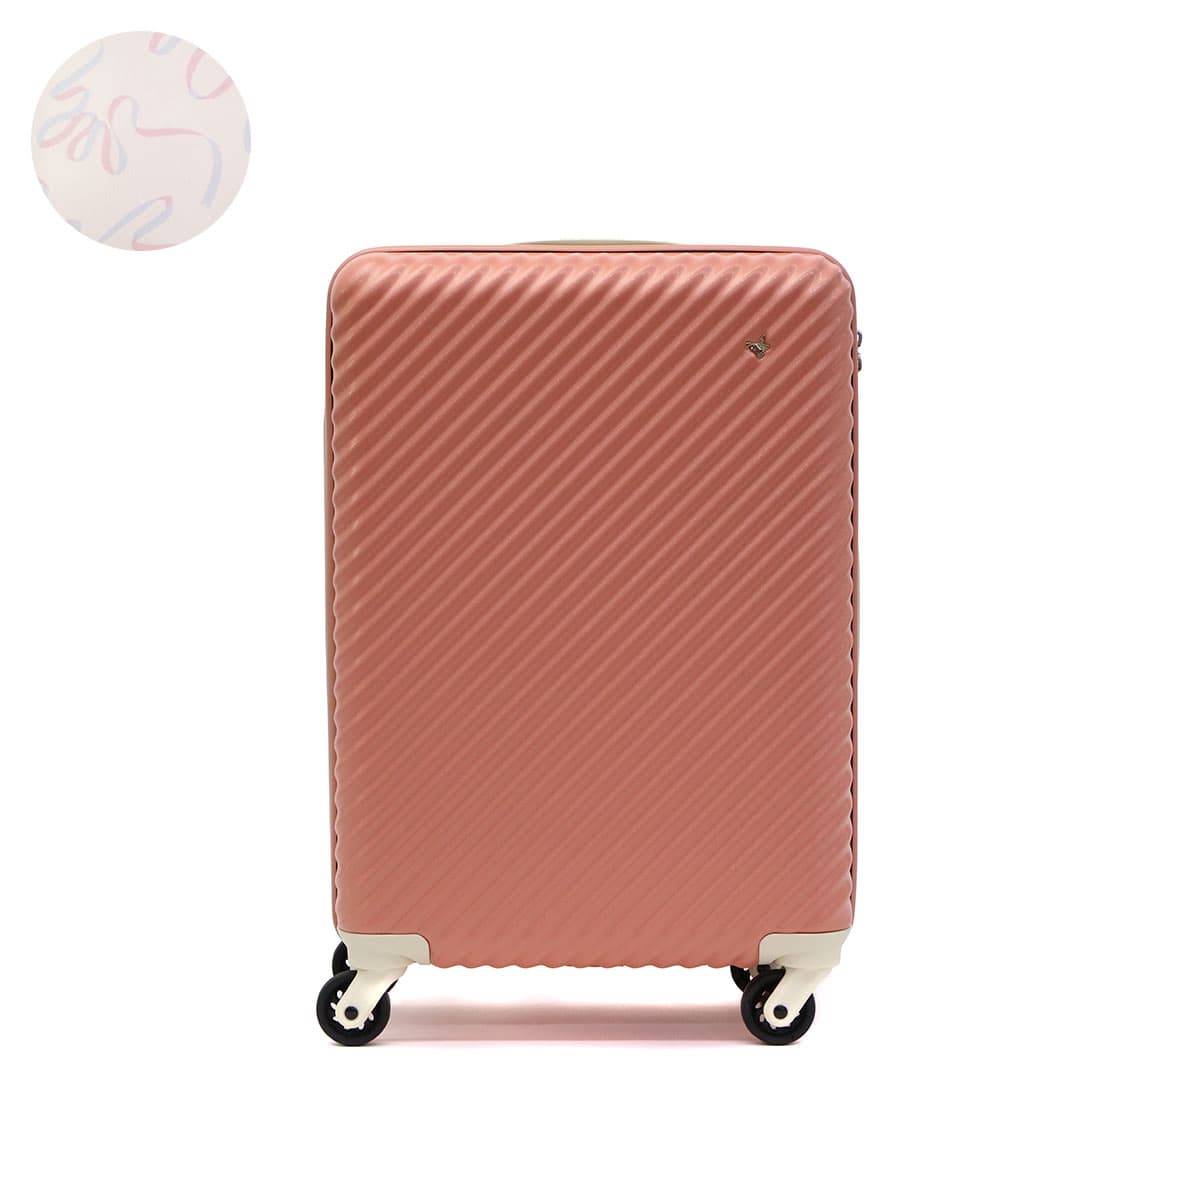 ハント スーツケース マイン ストッパー付き 48cm 33L 05745 機内持ち込み可 48 cm 2.7kg アネモネレッド  スーツケース、キャリーバッグ